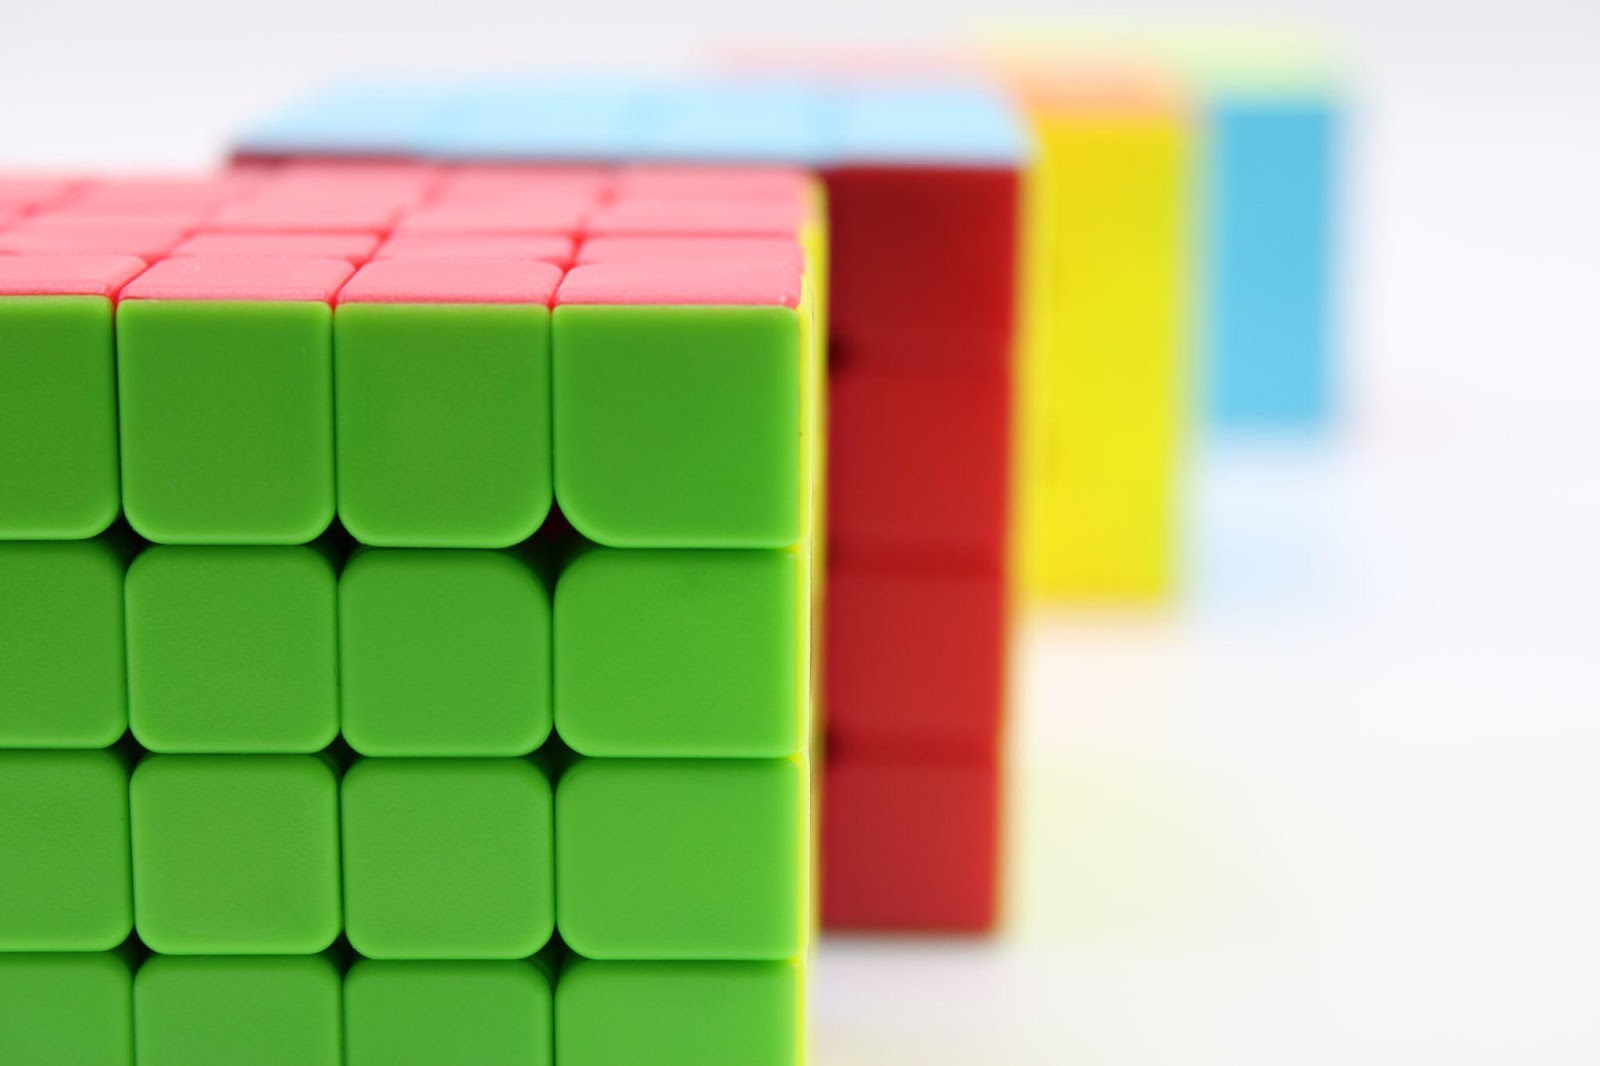 Variationen des Rubi's Cube haben ihren Weg auf den Markt gefunden.